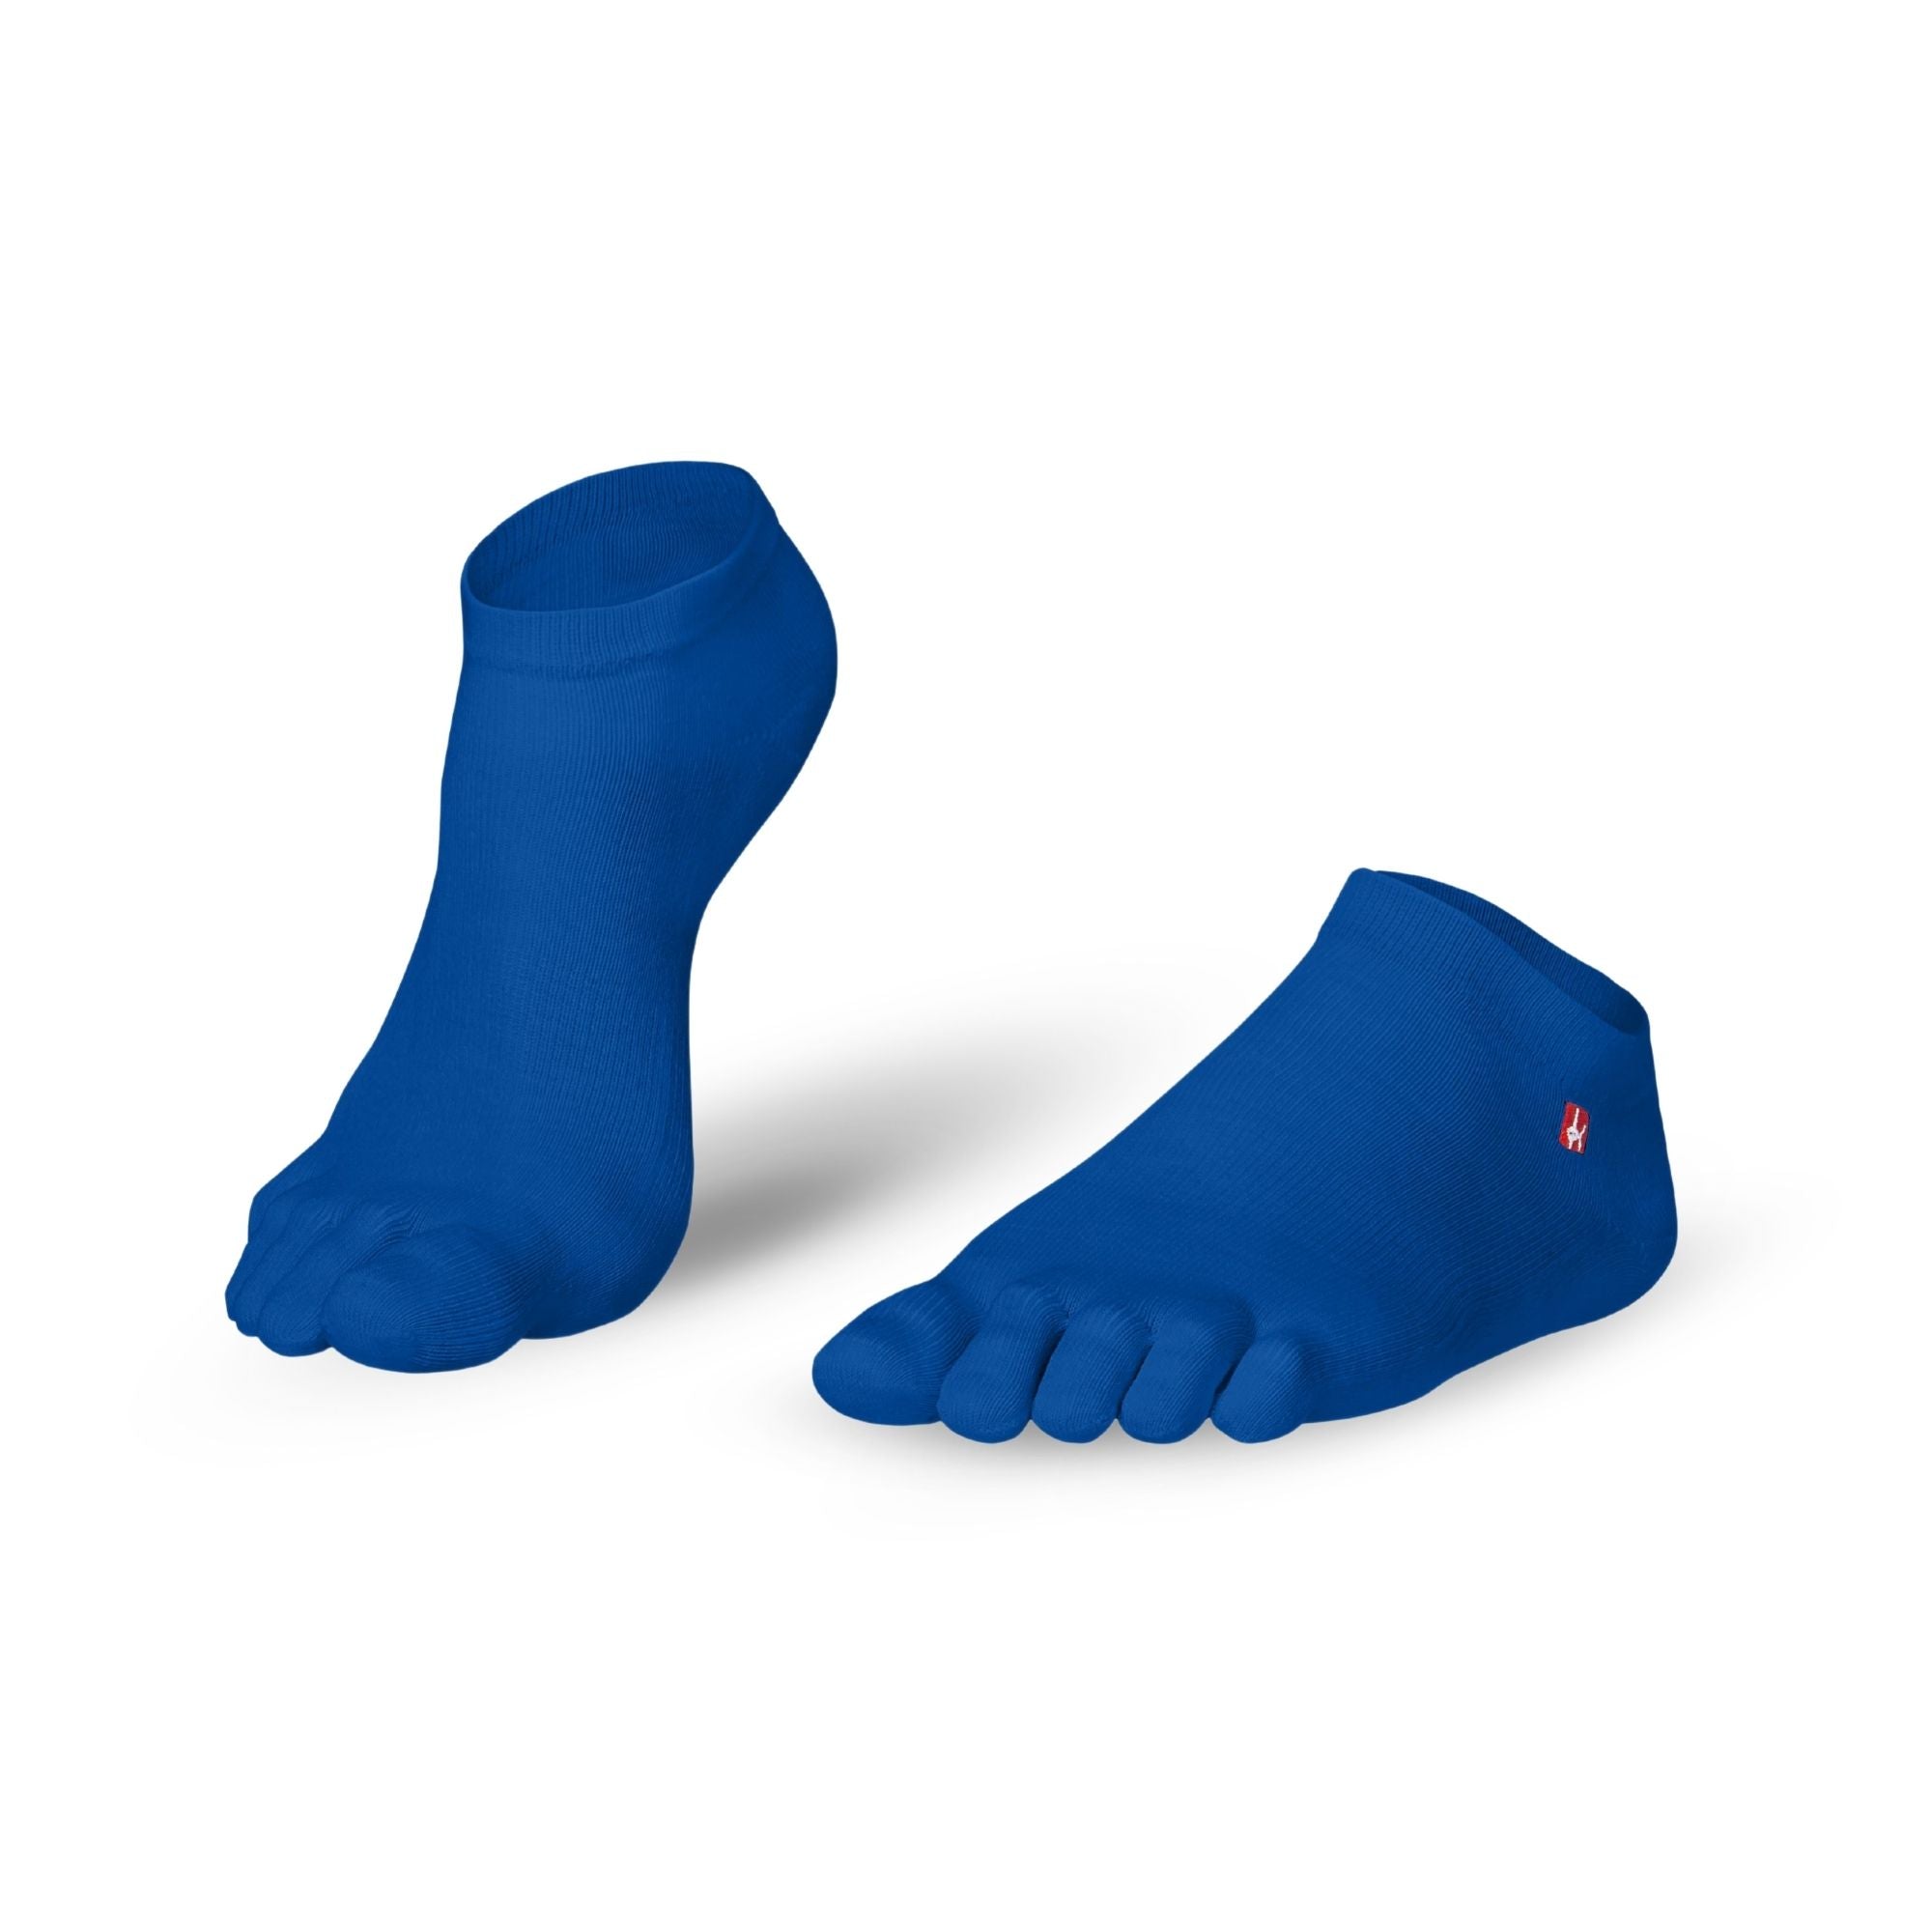 Prstne nogavice Coolmax Sneaker by Knitido Track & Trail ultralite fresh v mandarinsko modri barvi